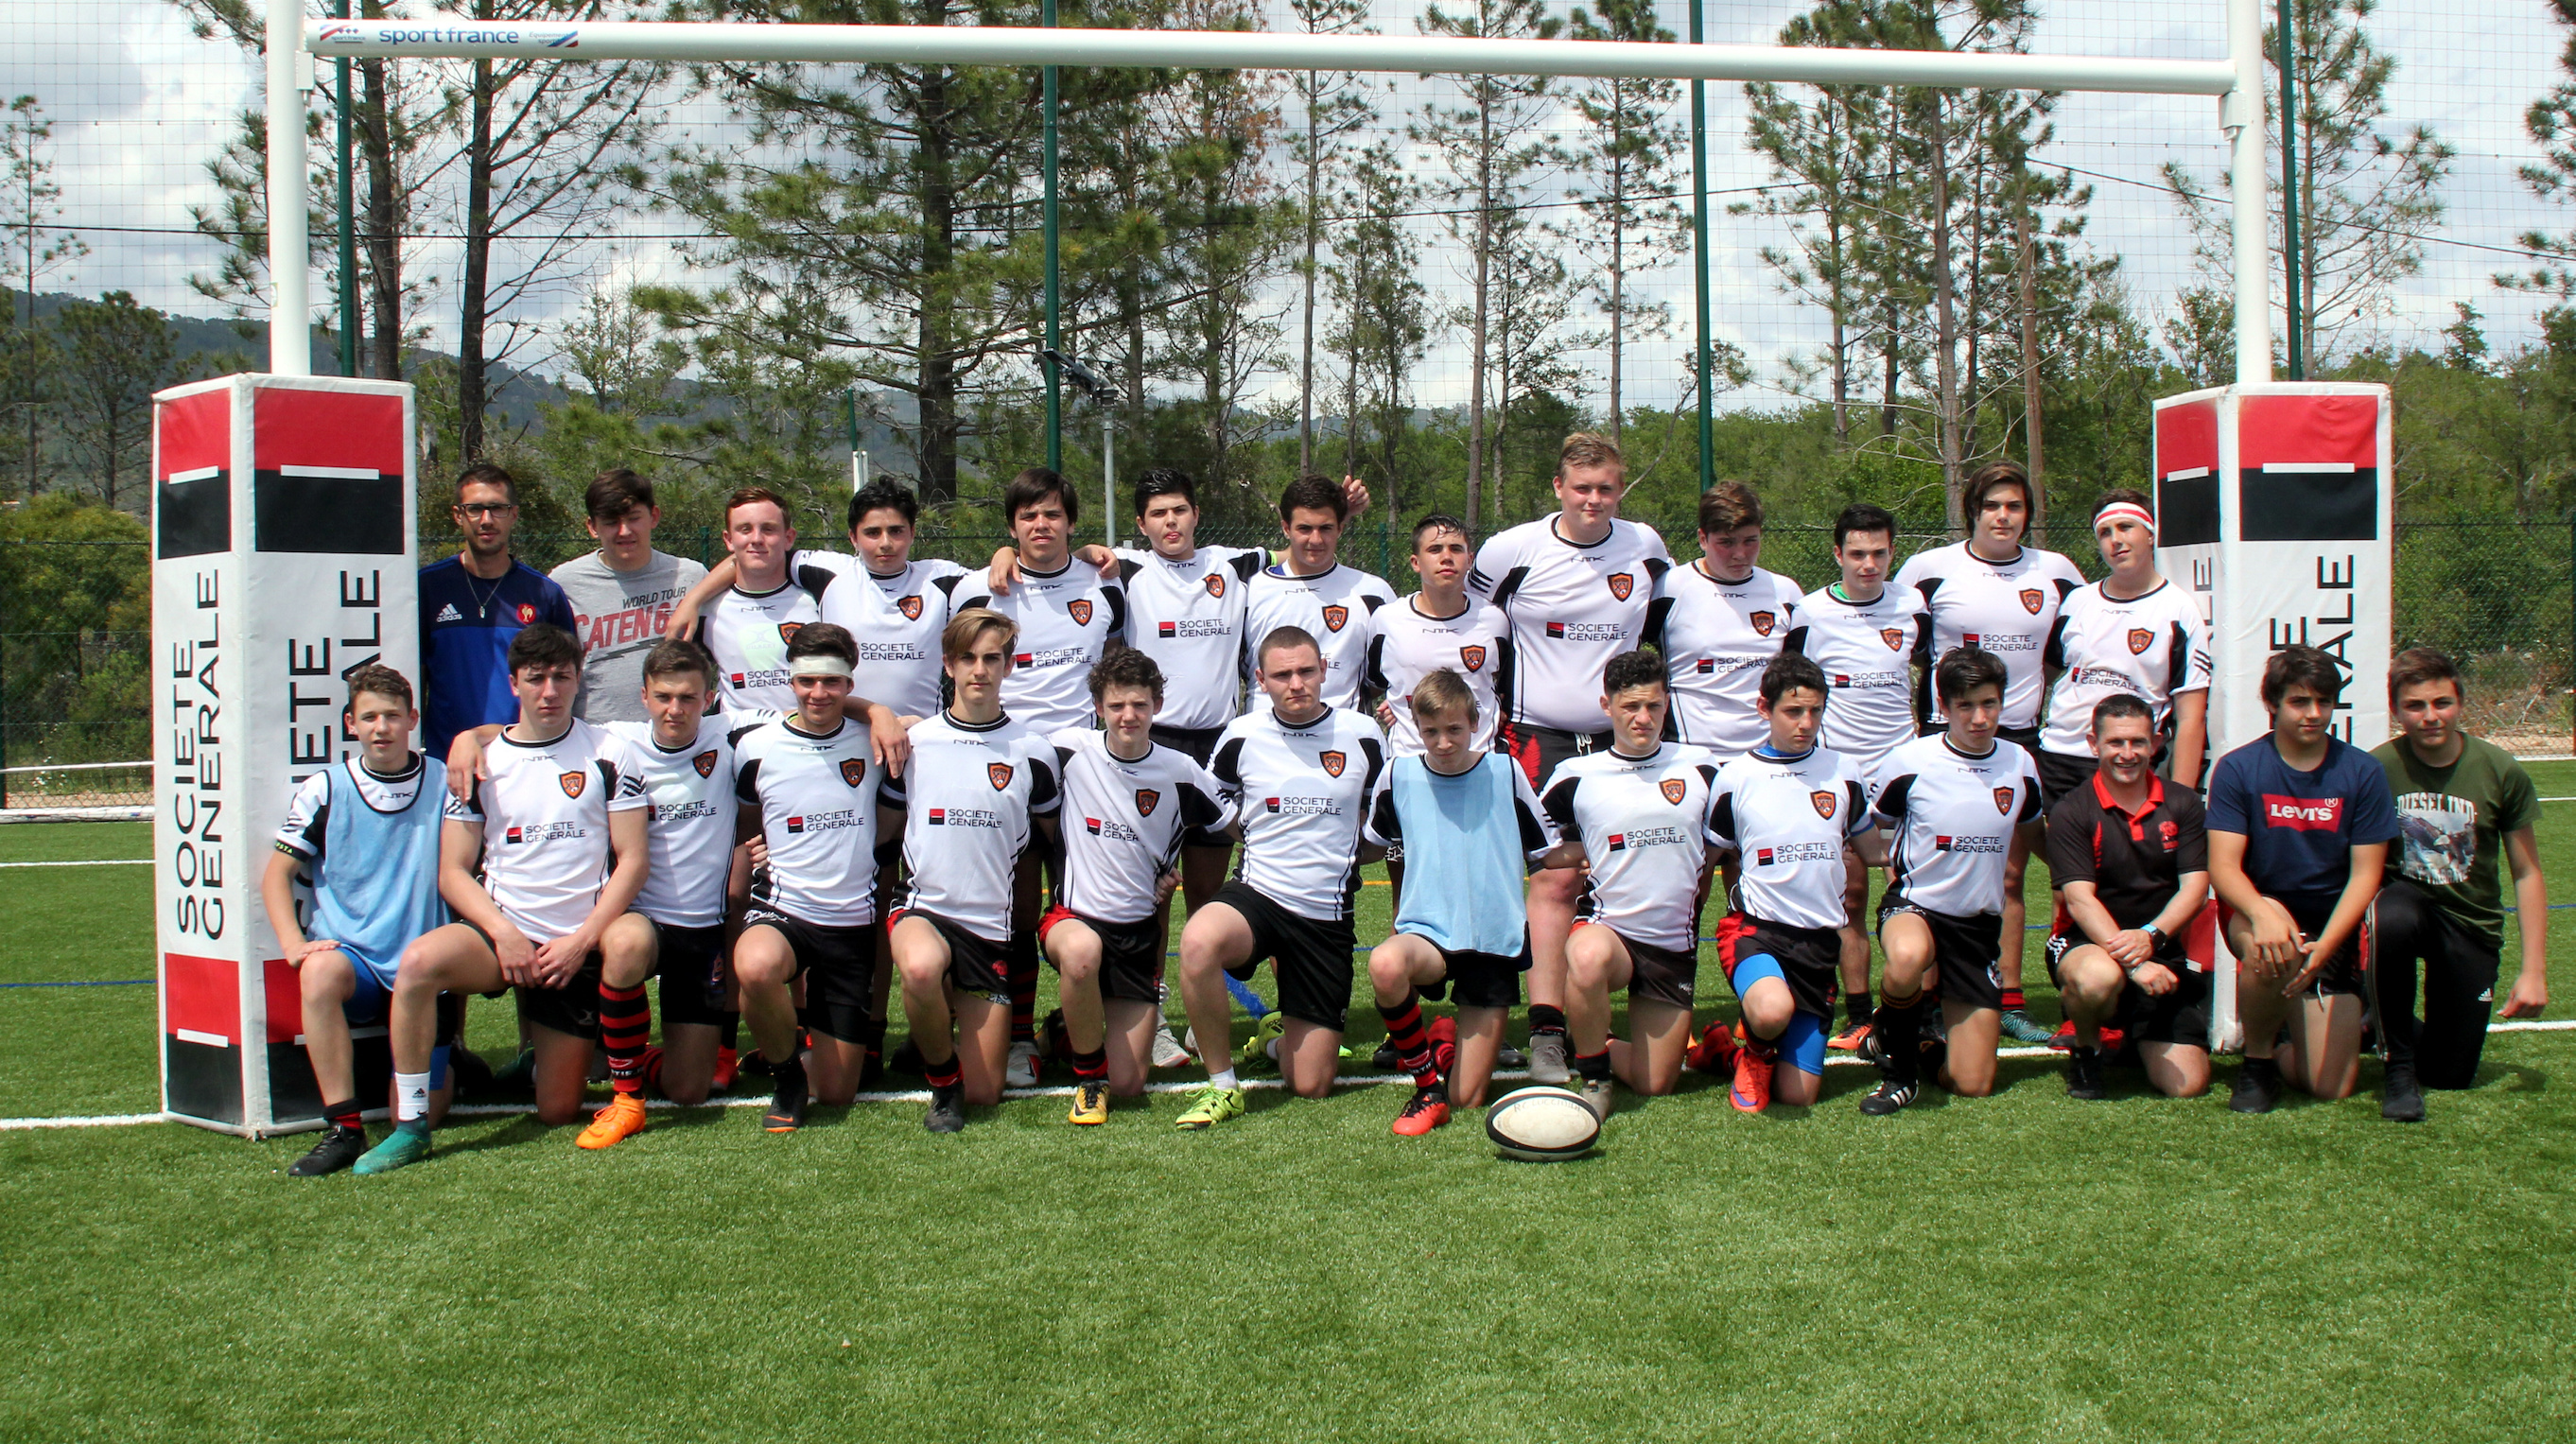 Rugby U16 : L'Entente Lucciana - Porto-Vecchio toujours invaincue